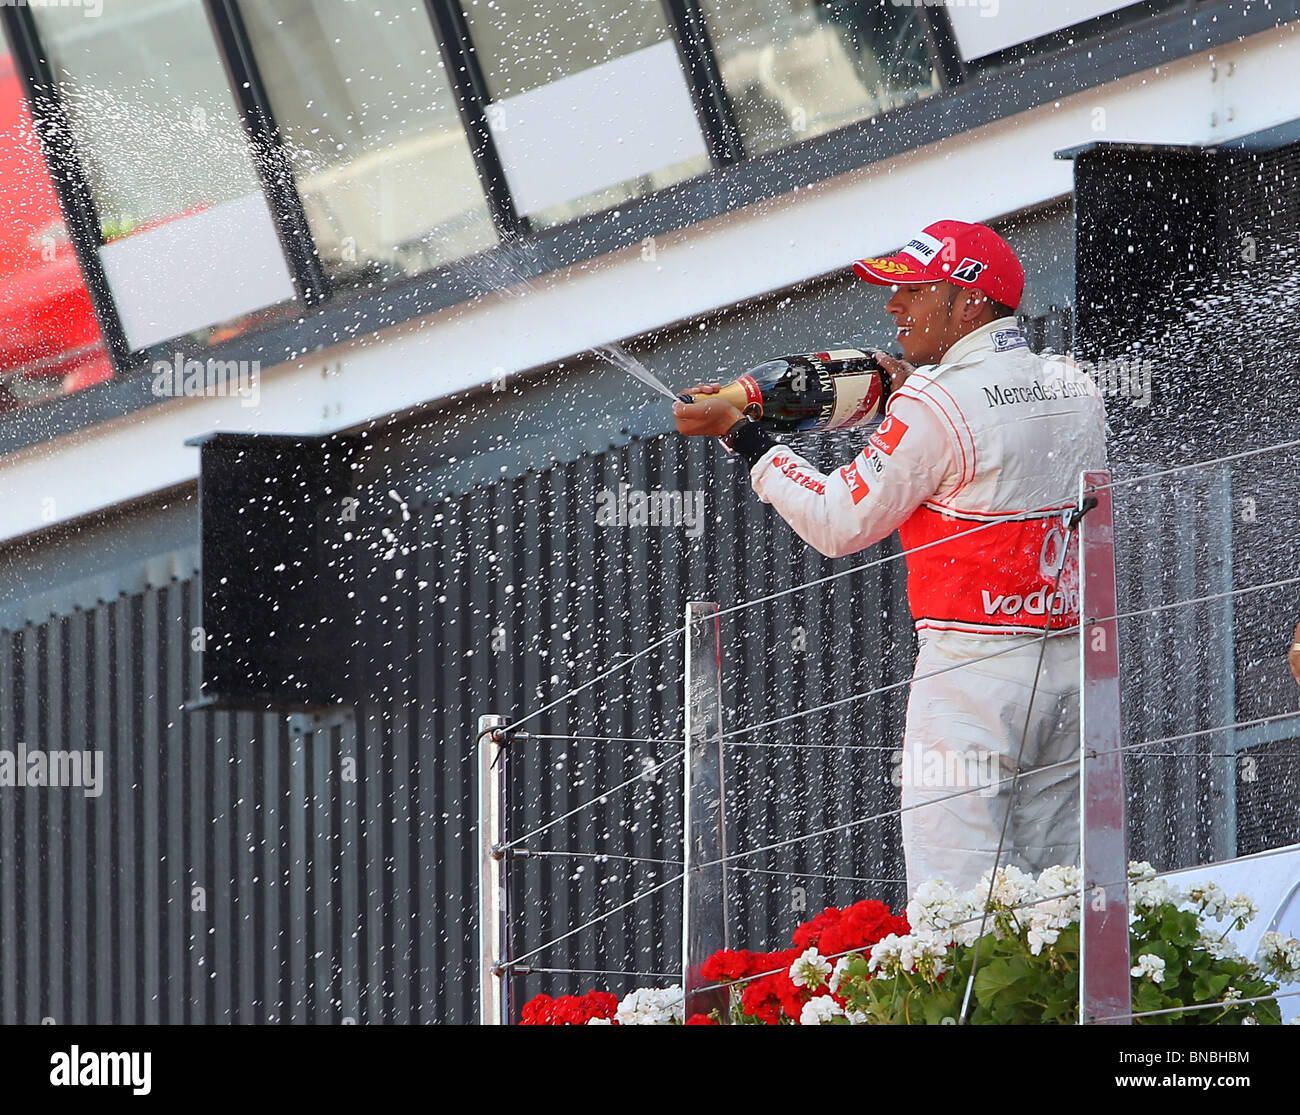 Lewis Hamilton feiert seinen zweiten Platz beenden in der britischen Formel Eins Grand Prix, Silverstone, 11.7.2010 Stockfoto